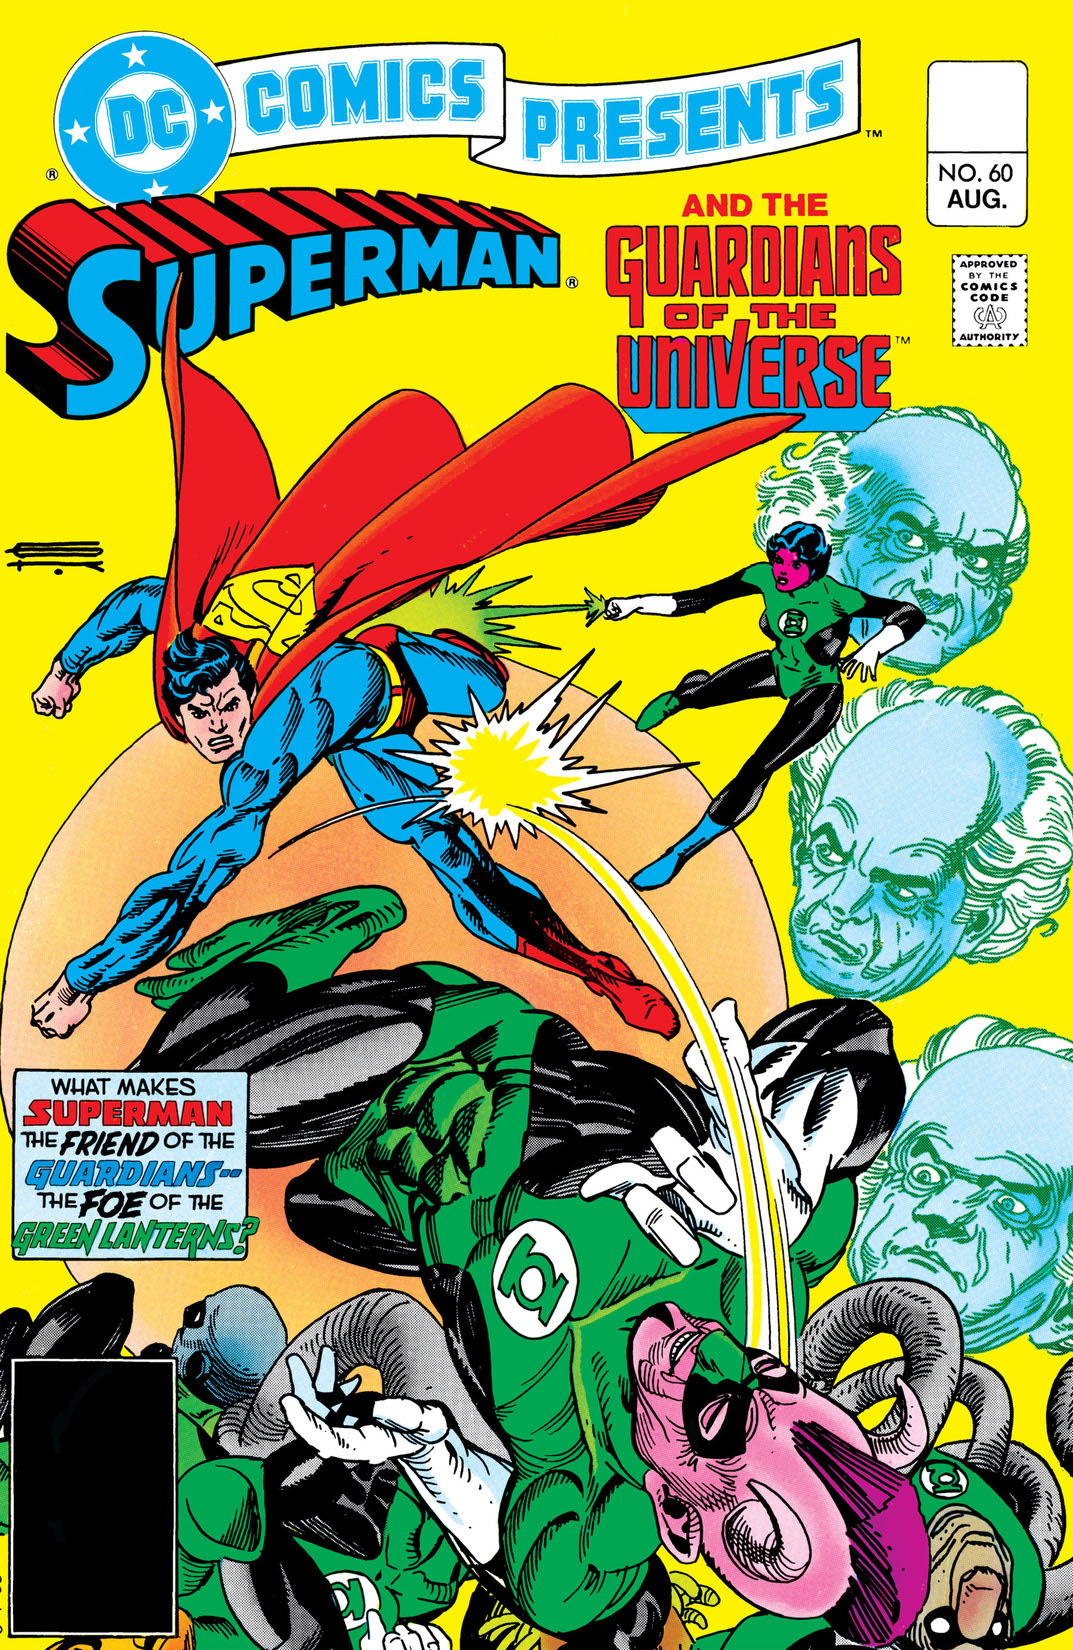 DC Comics Presents (1978-1986) #60 preview images